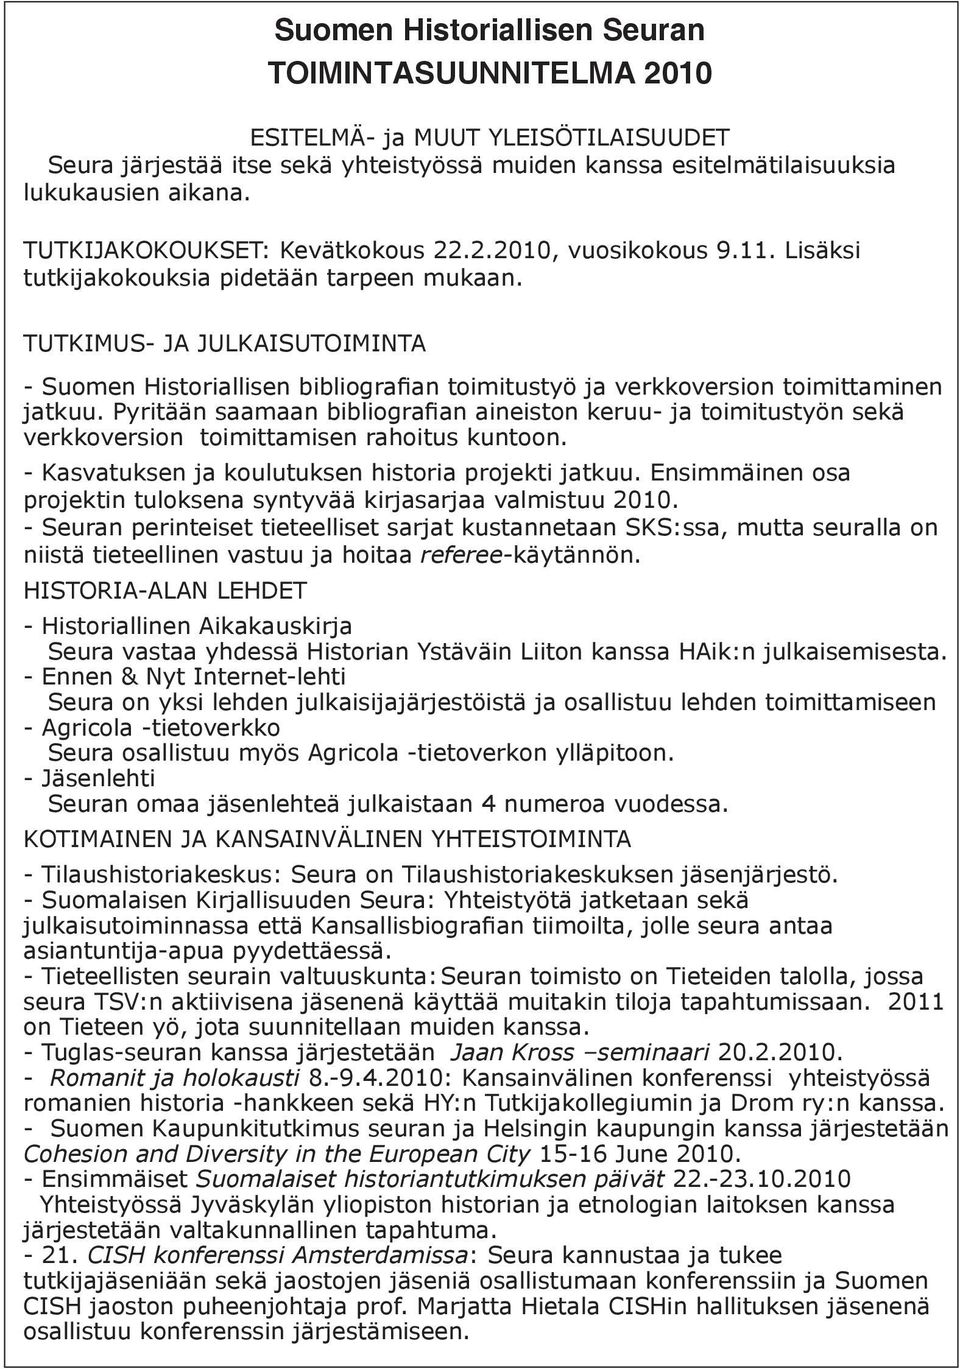 TUTKIMUS- JA JULKAISUTOIMINTA - Suomen Historiallisen bibliografian toimitustyö ja verkkoversion toimittaminen jatkuu.